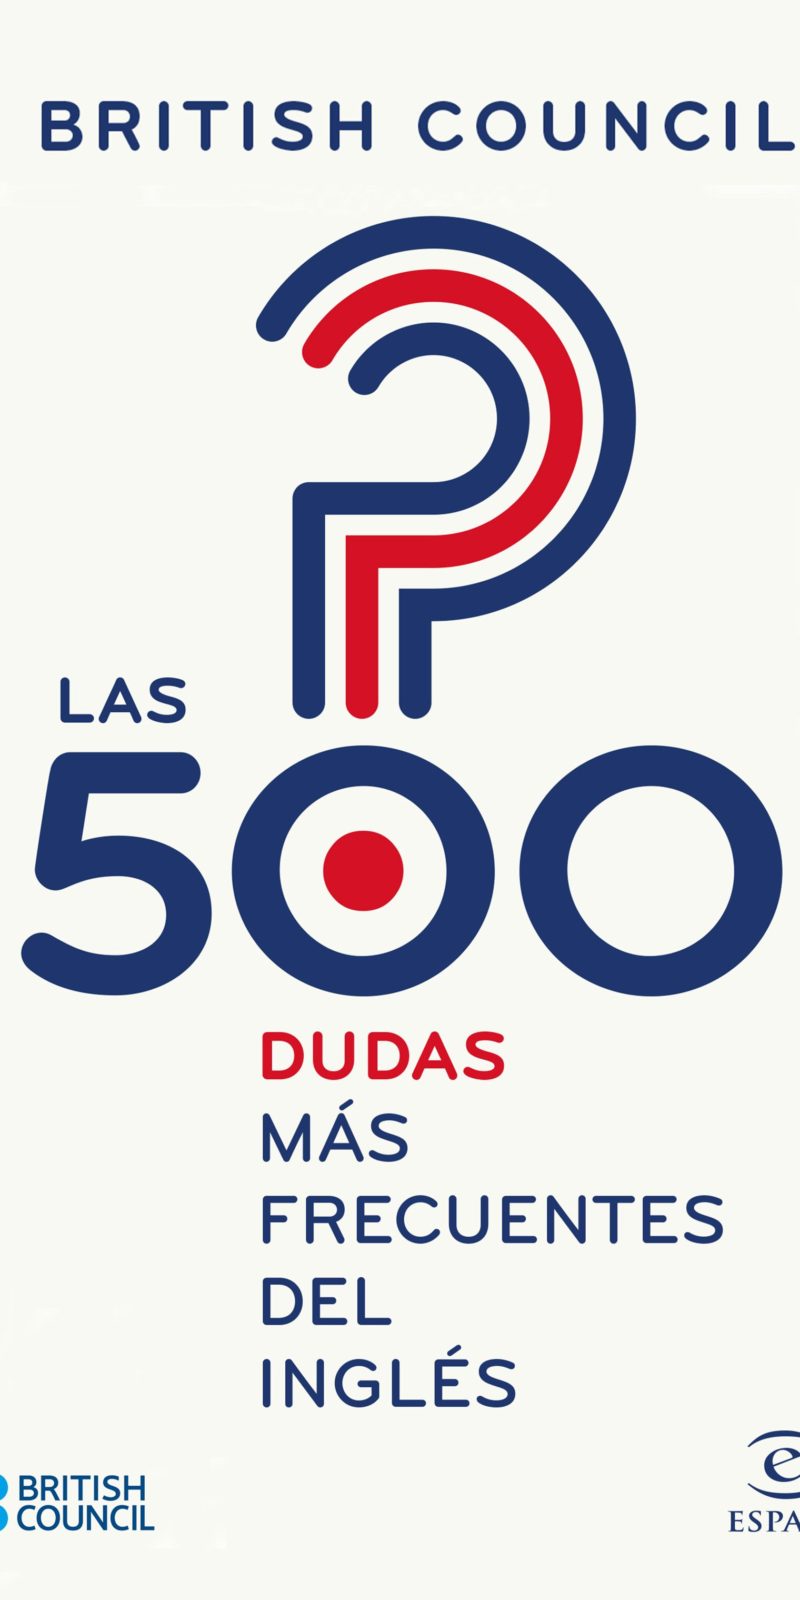 500 DUDAS MÁS FRECUENTES DEL INGLÉS